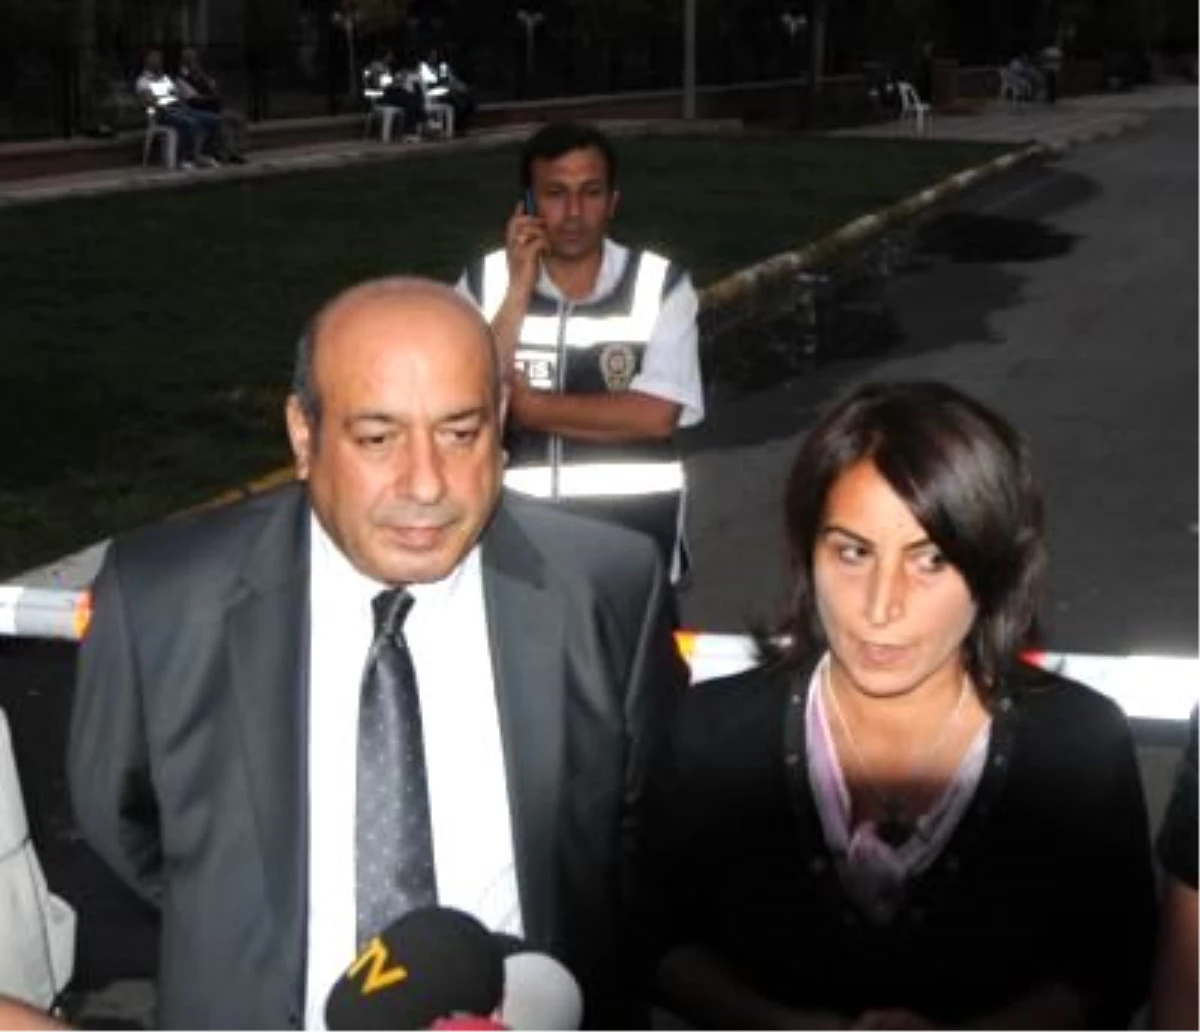 Şırnak, İdil ve Silopi Belediye Başkanlarına KCK Gözaltısı